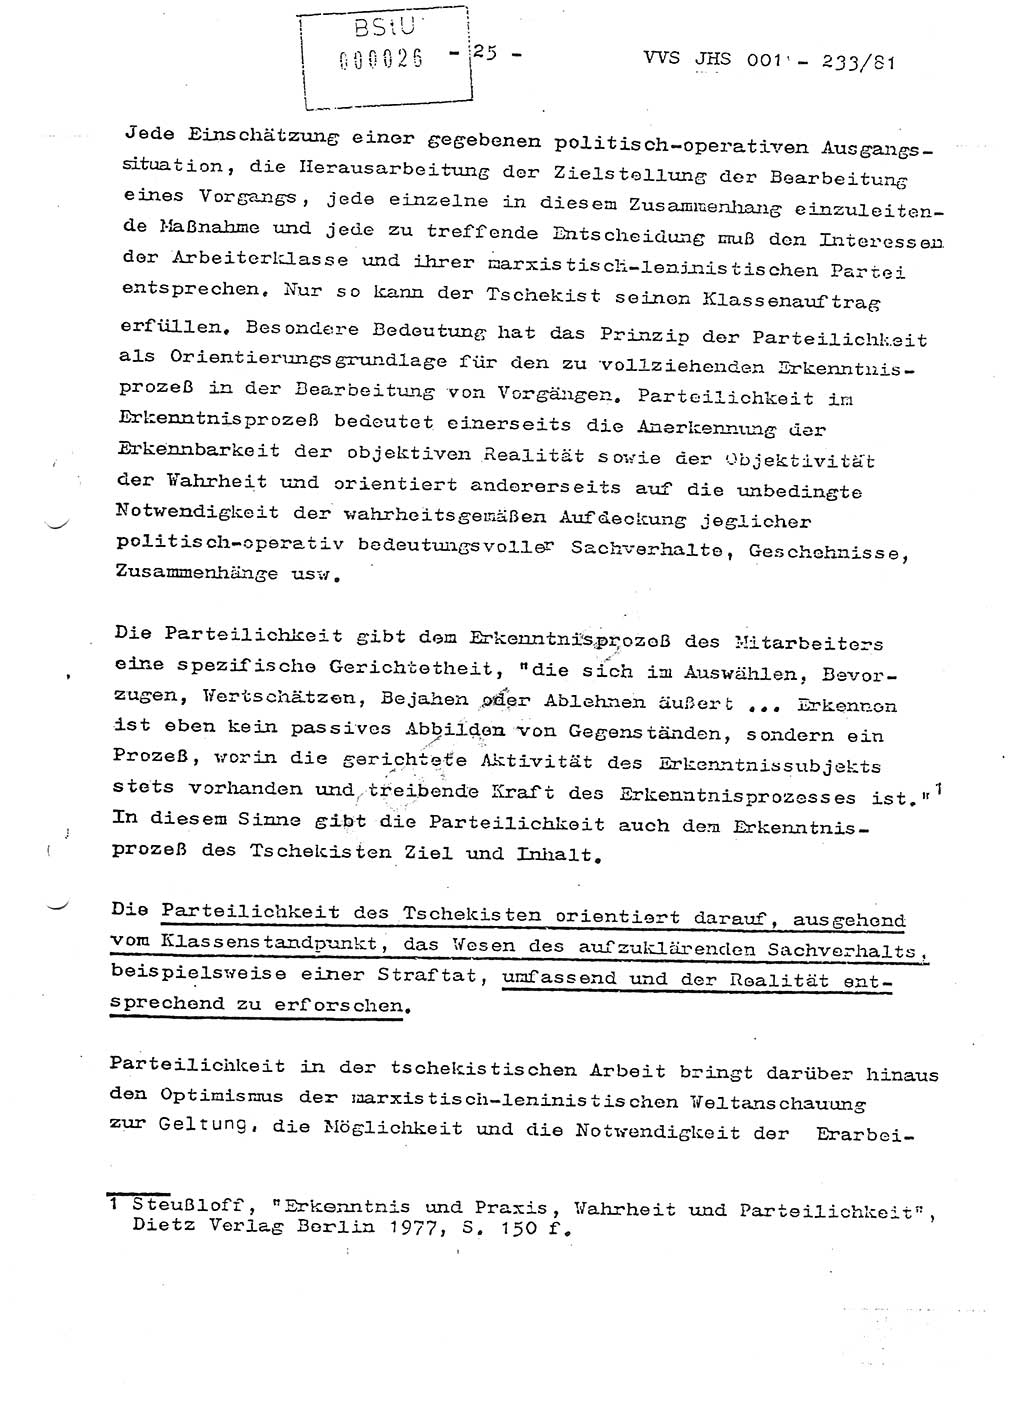 Dissertation Oberstleutnant Horst Zank (JHS), Oberstleutnant Dr. Karl-Heinz Knoblauch (JHS), Oberstleutnant Gustav-Adolf Kowalewski (HA Ⅸ), Oberstleutnant Wolfgang Plötner (HA Ⅸ), Ministerium für Staatssicherheit (MfS) [Deutsche Demokratische Republik (DDR)], Juristische Hochschule (JHS), Vertrauliche Verschlußsache (VVS) o001-233/81, Potsdam 1981, Blatt 26 (Diss. MfS DDR JHS VVS o001-233/81 1981, Bl. 26)